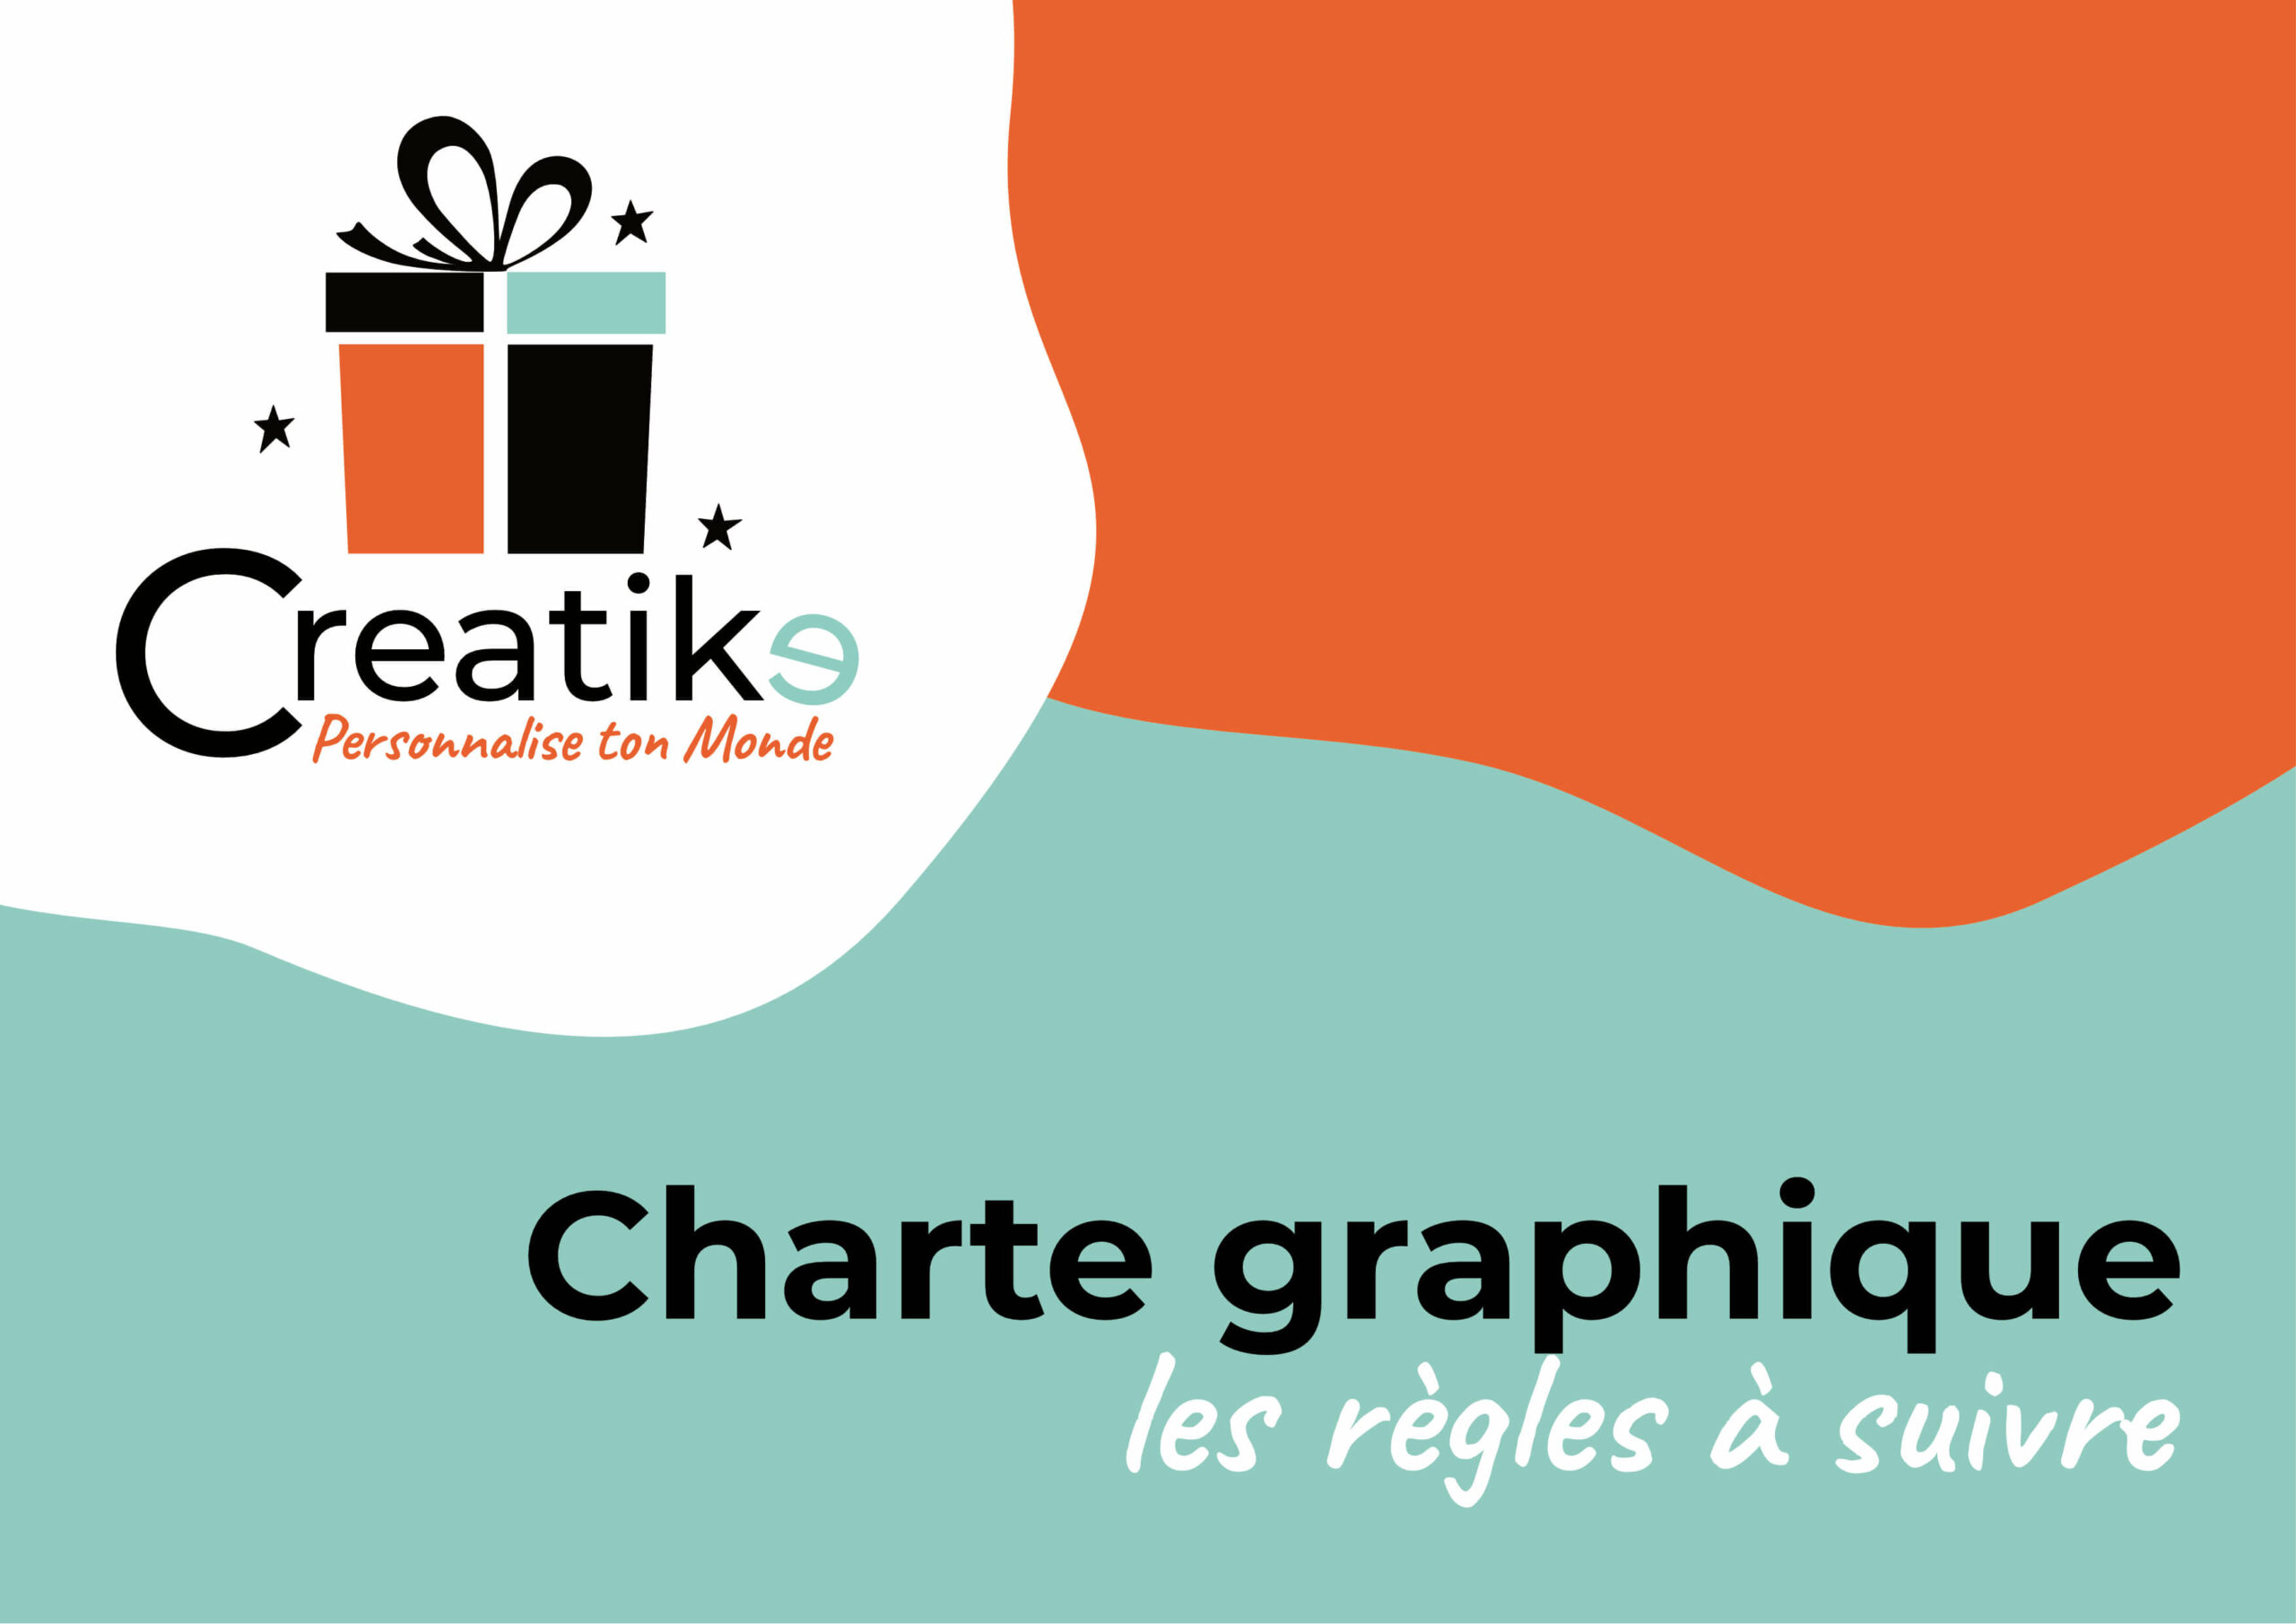 Identité graphique - format document page de couverture - Creatike - créé(e) par Camille Laot